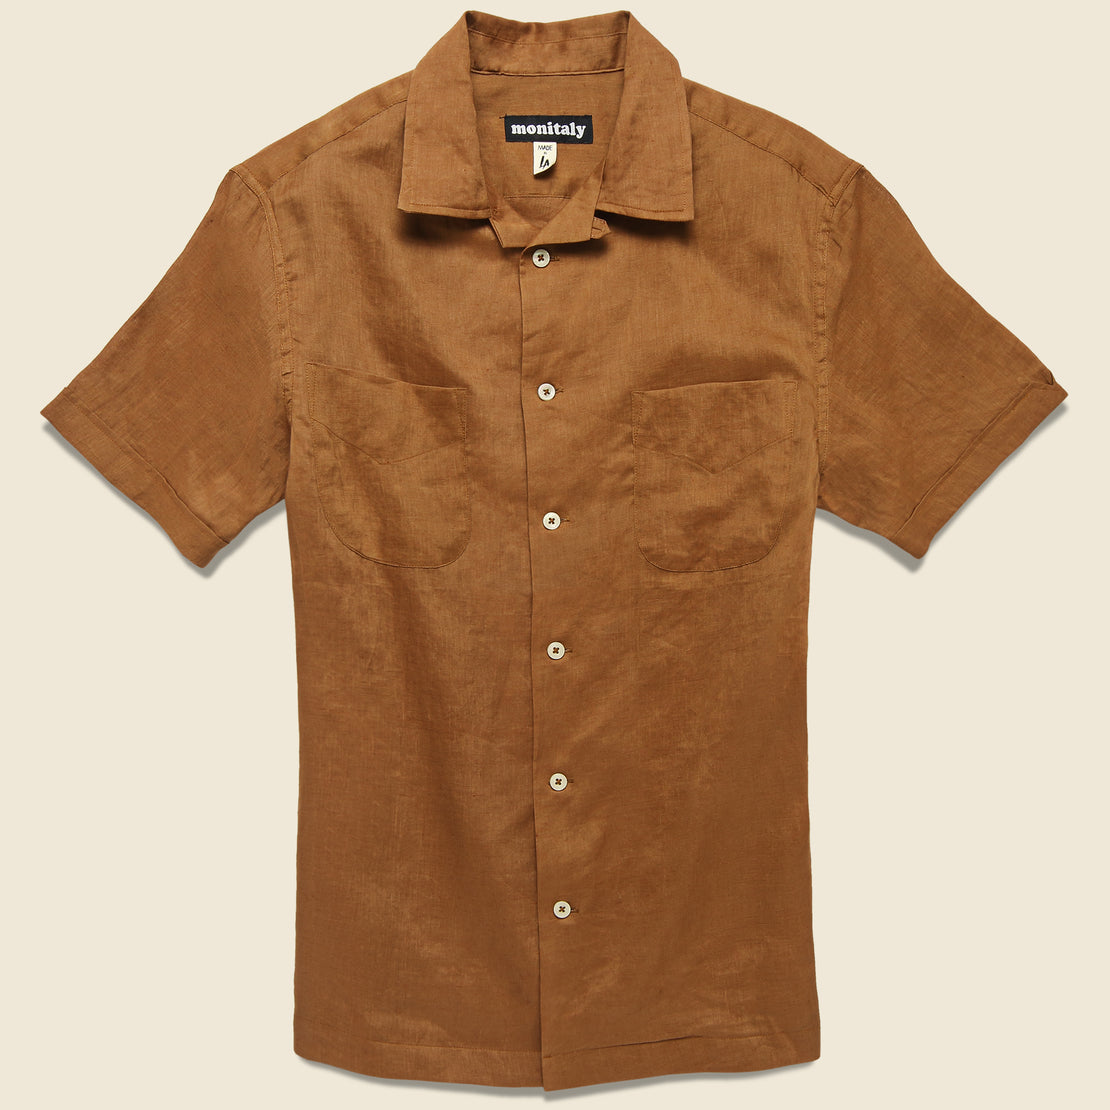 Monitaly Vacation Shirt - Brown